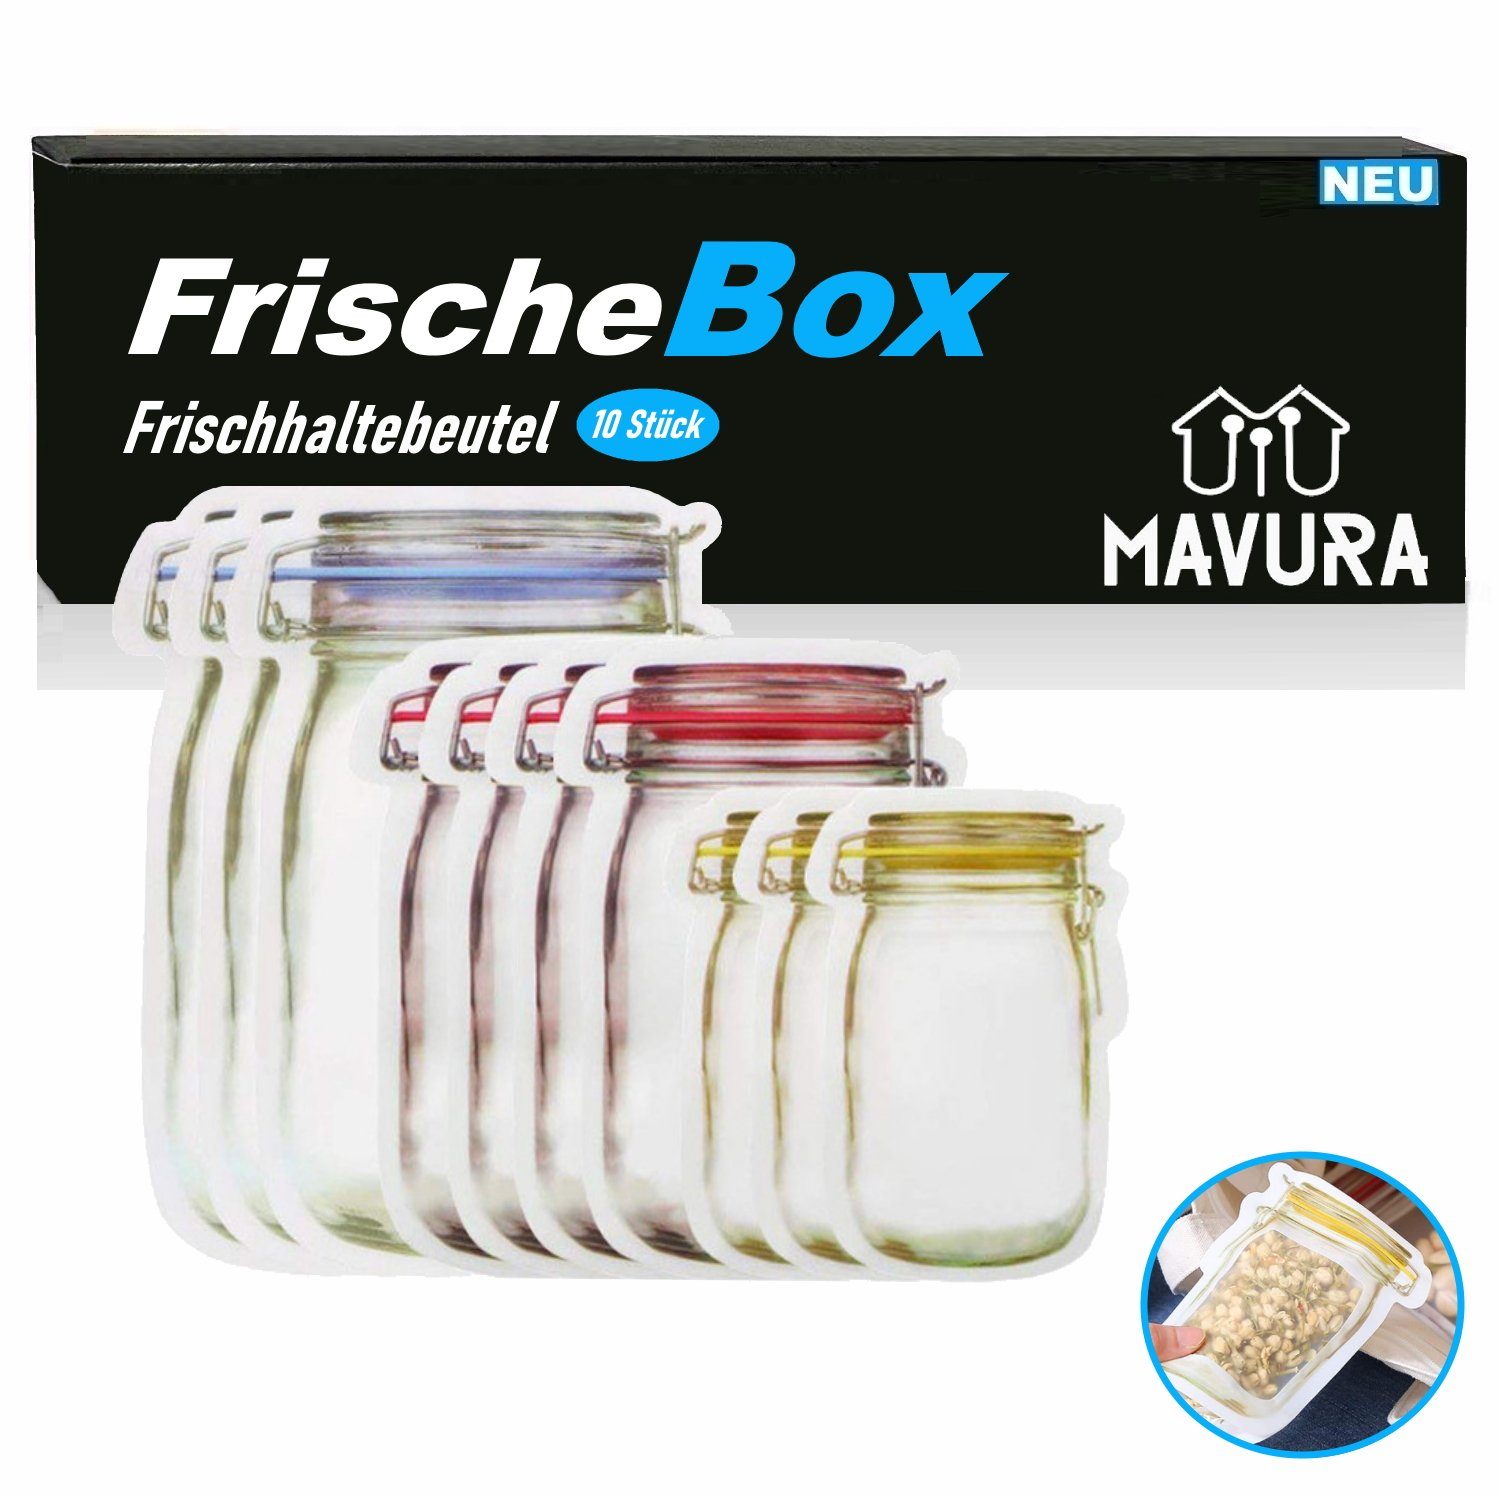 MAVURA Aufbewahrungsbeutel FrischeBox (Silikon Frischhaltebeutel), Frischhaltedosen Set] Gefrierbeutel Lebensmittelboxen, Lebensmittelbeutel [10er Frischhaltedose